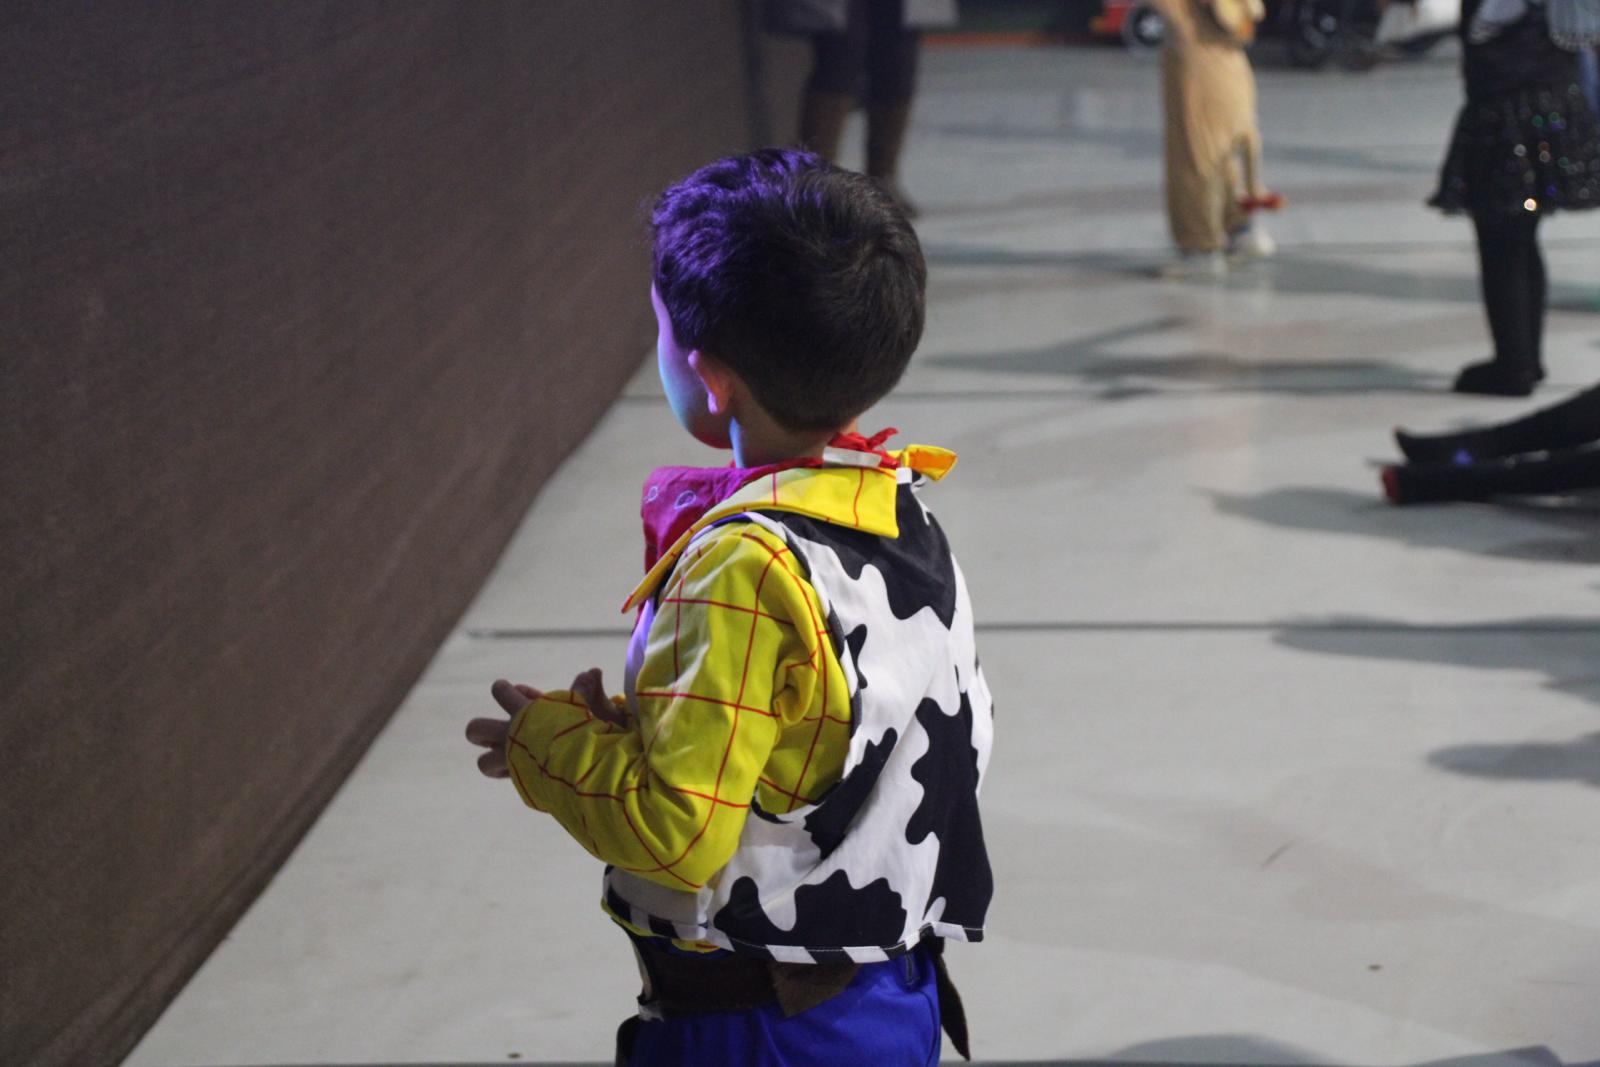 GALERÍA | Pequeños mirobrigenses “bailan” sus disfraces en el Carnaval de Ciudad Rodrigo 